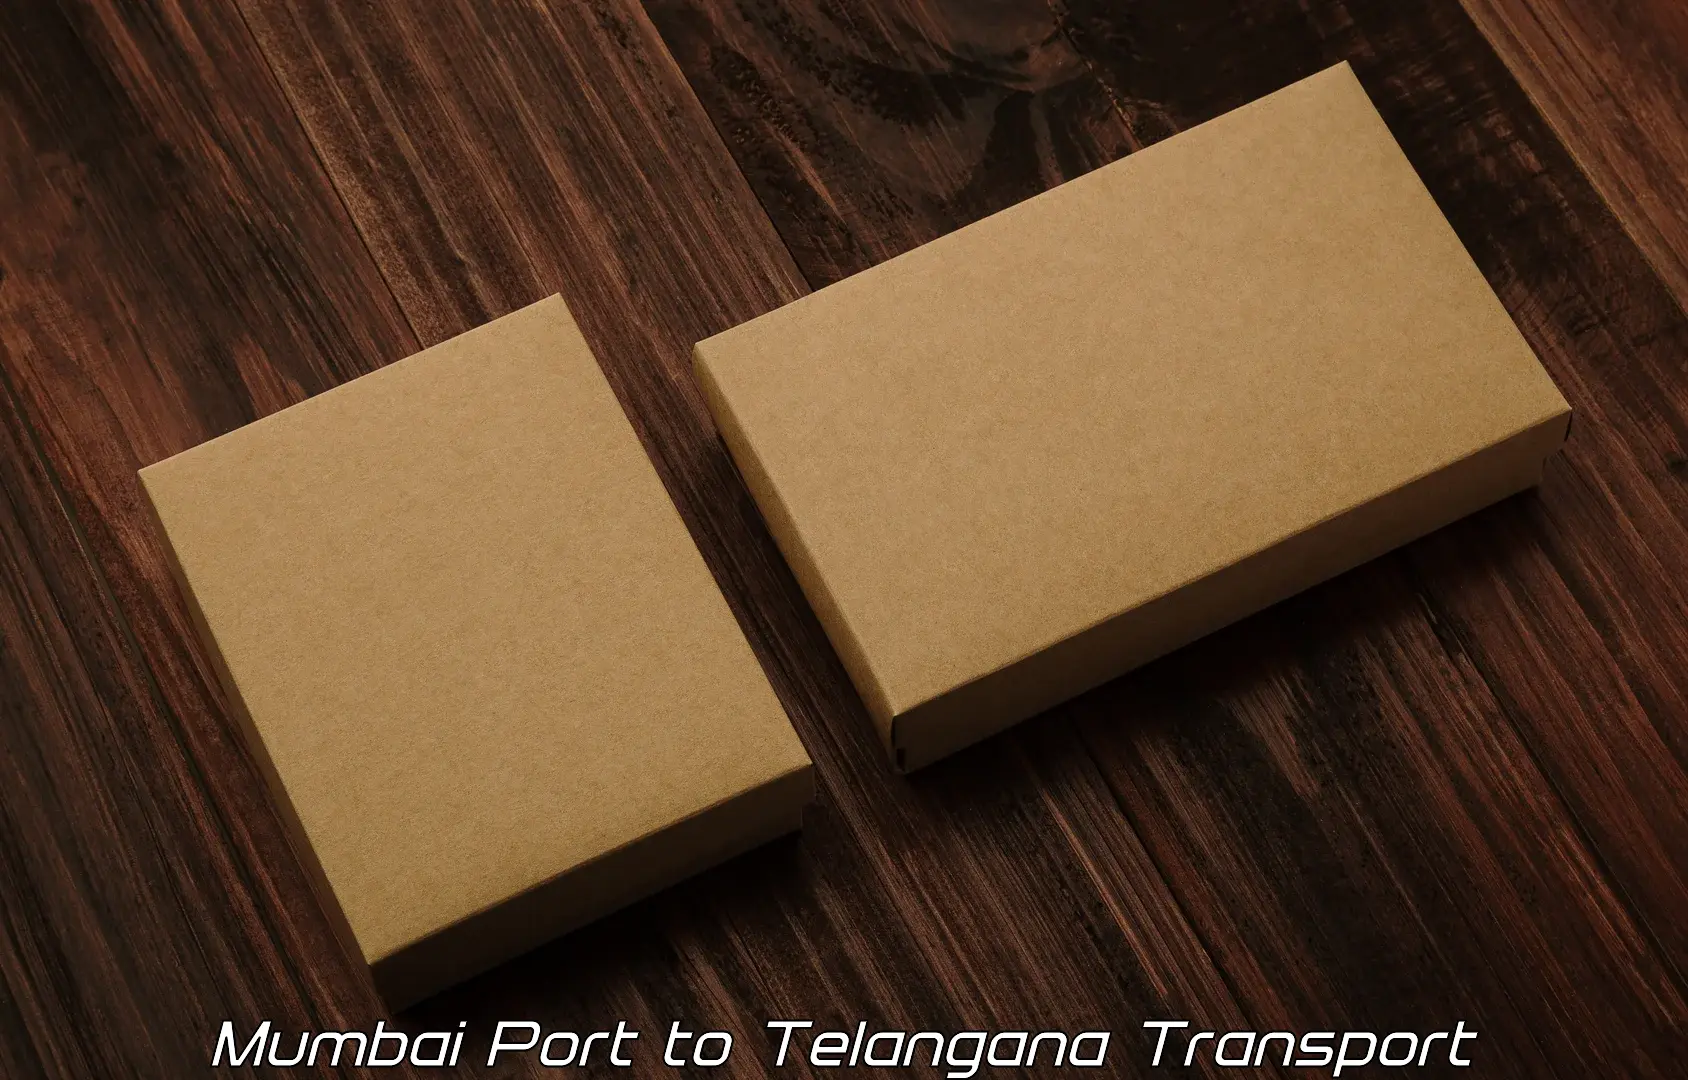 Air freight transport services Mumbai Port to Narayankhed